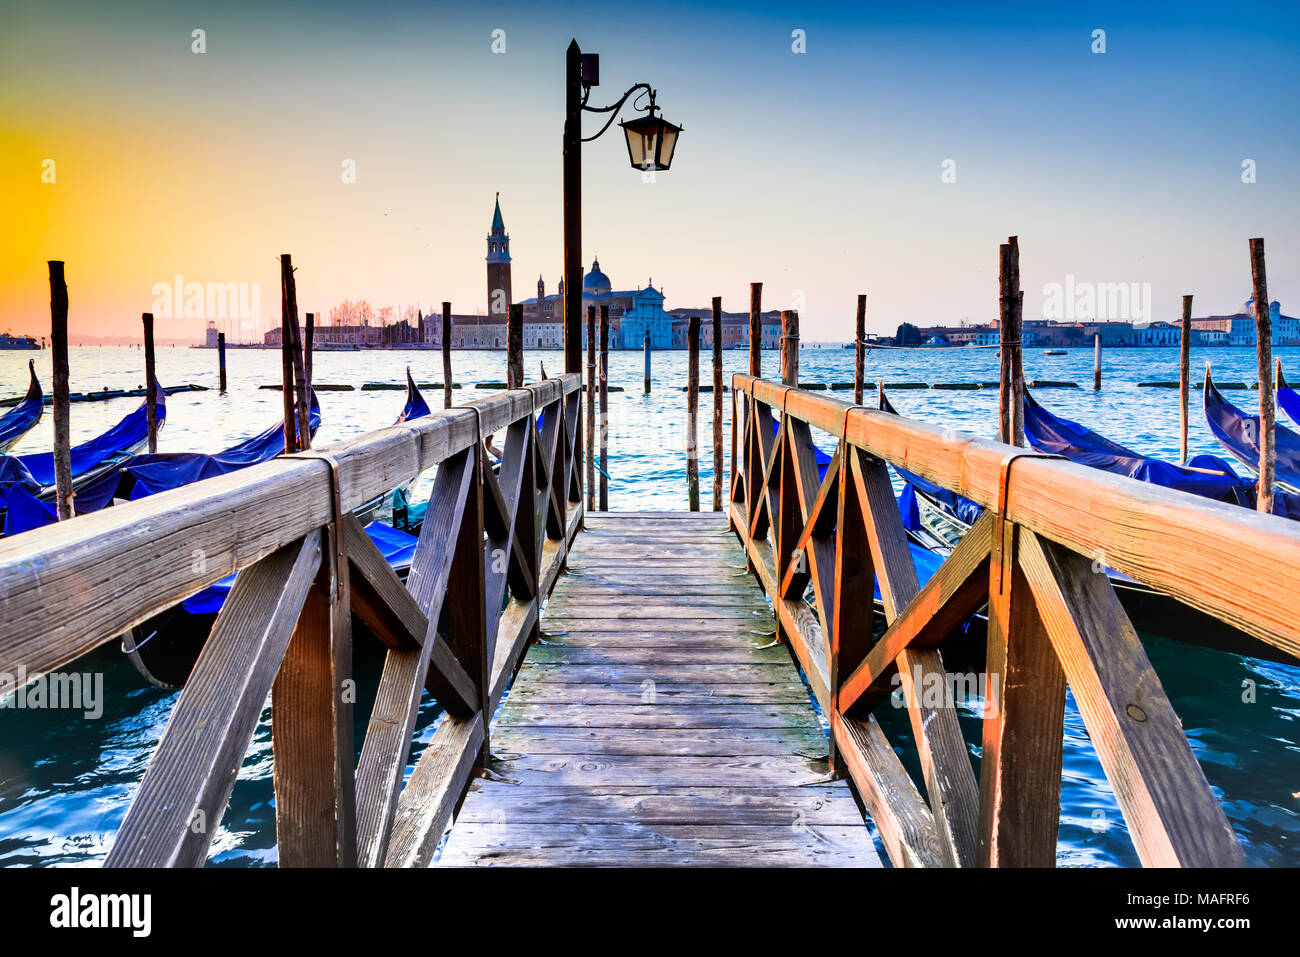 Venecia, Italia. Amanecer con las góndolas en el Gran Canal, la Piazza San Marco, el Mar Adriático. Foto de stock